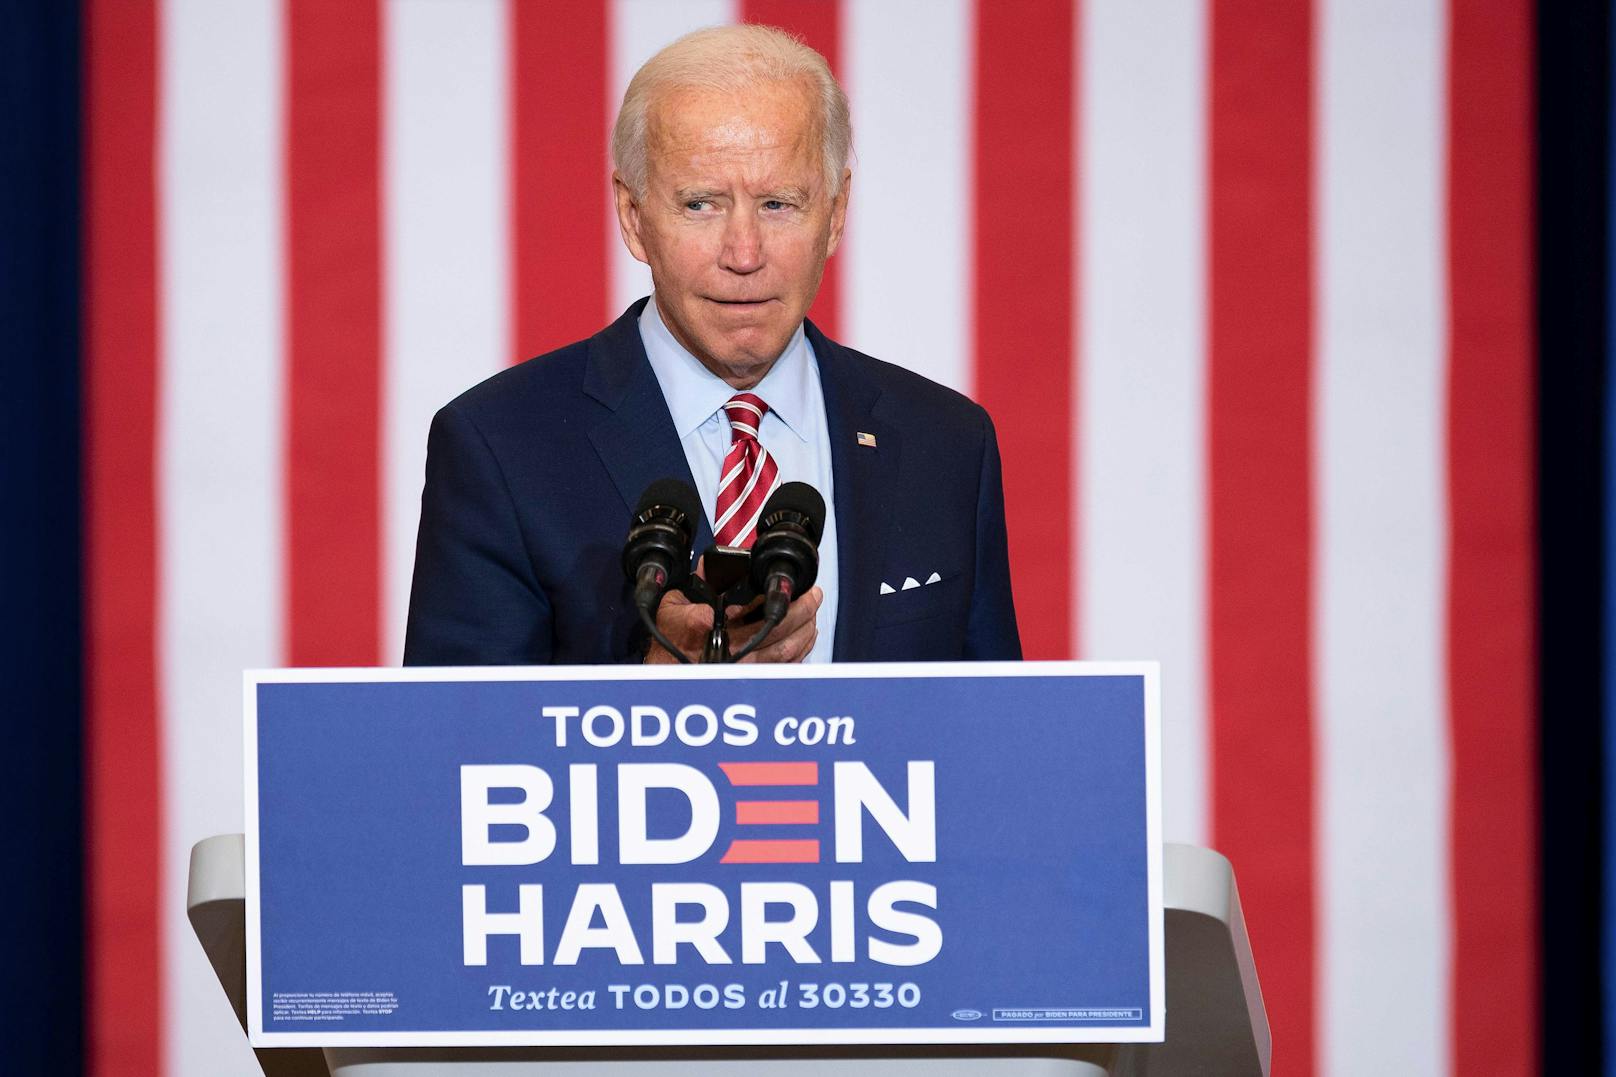 Der demokratische Präsidentschaftskandidat Joe Biden spielt Musik von seinem Handy, während er an einer Veranstaltung im Rahmen des "Hispanic Heritage Month" in Florida teilnimmt.